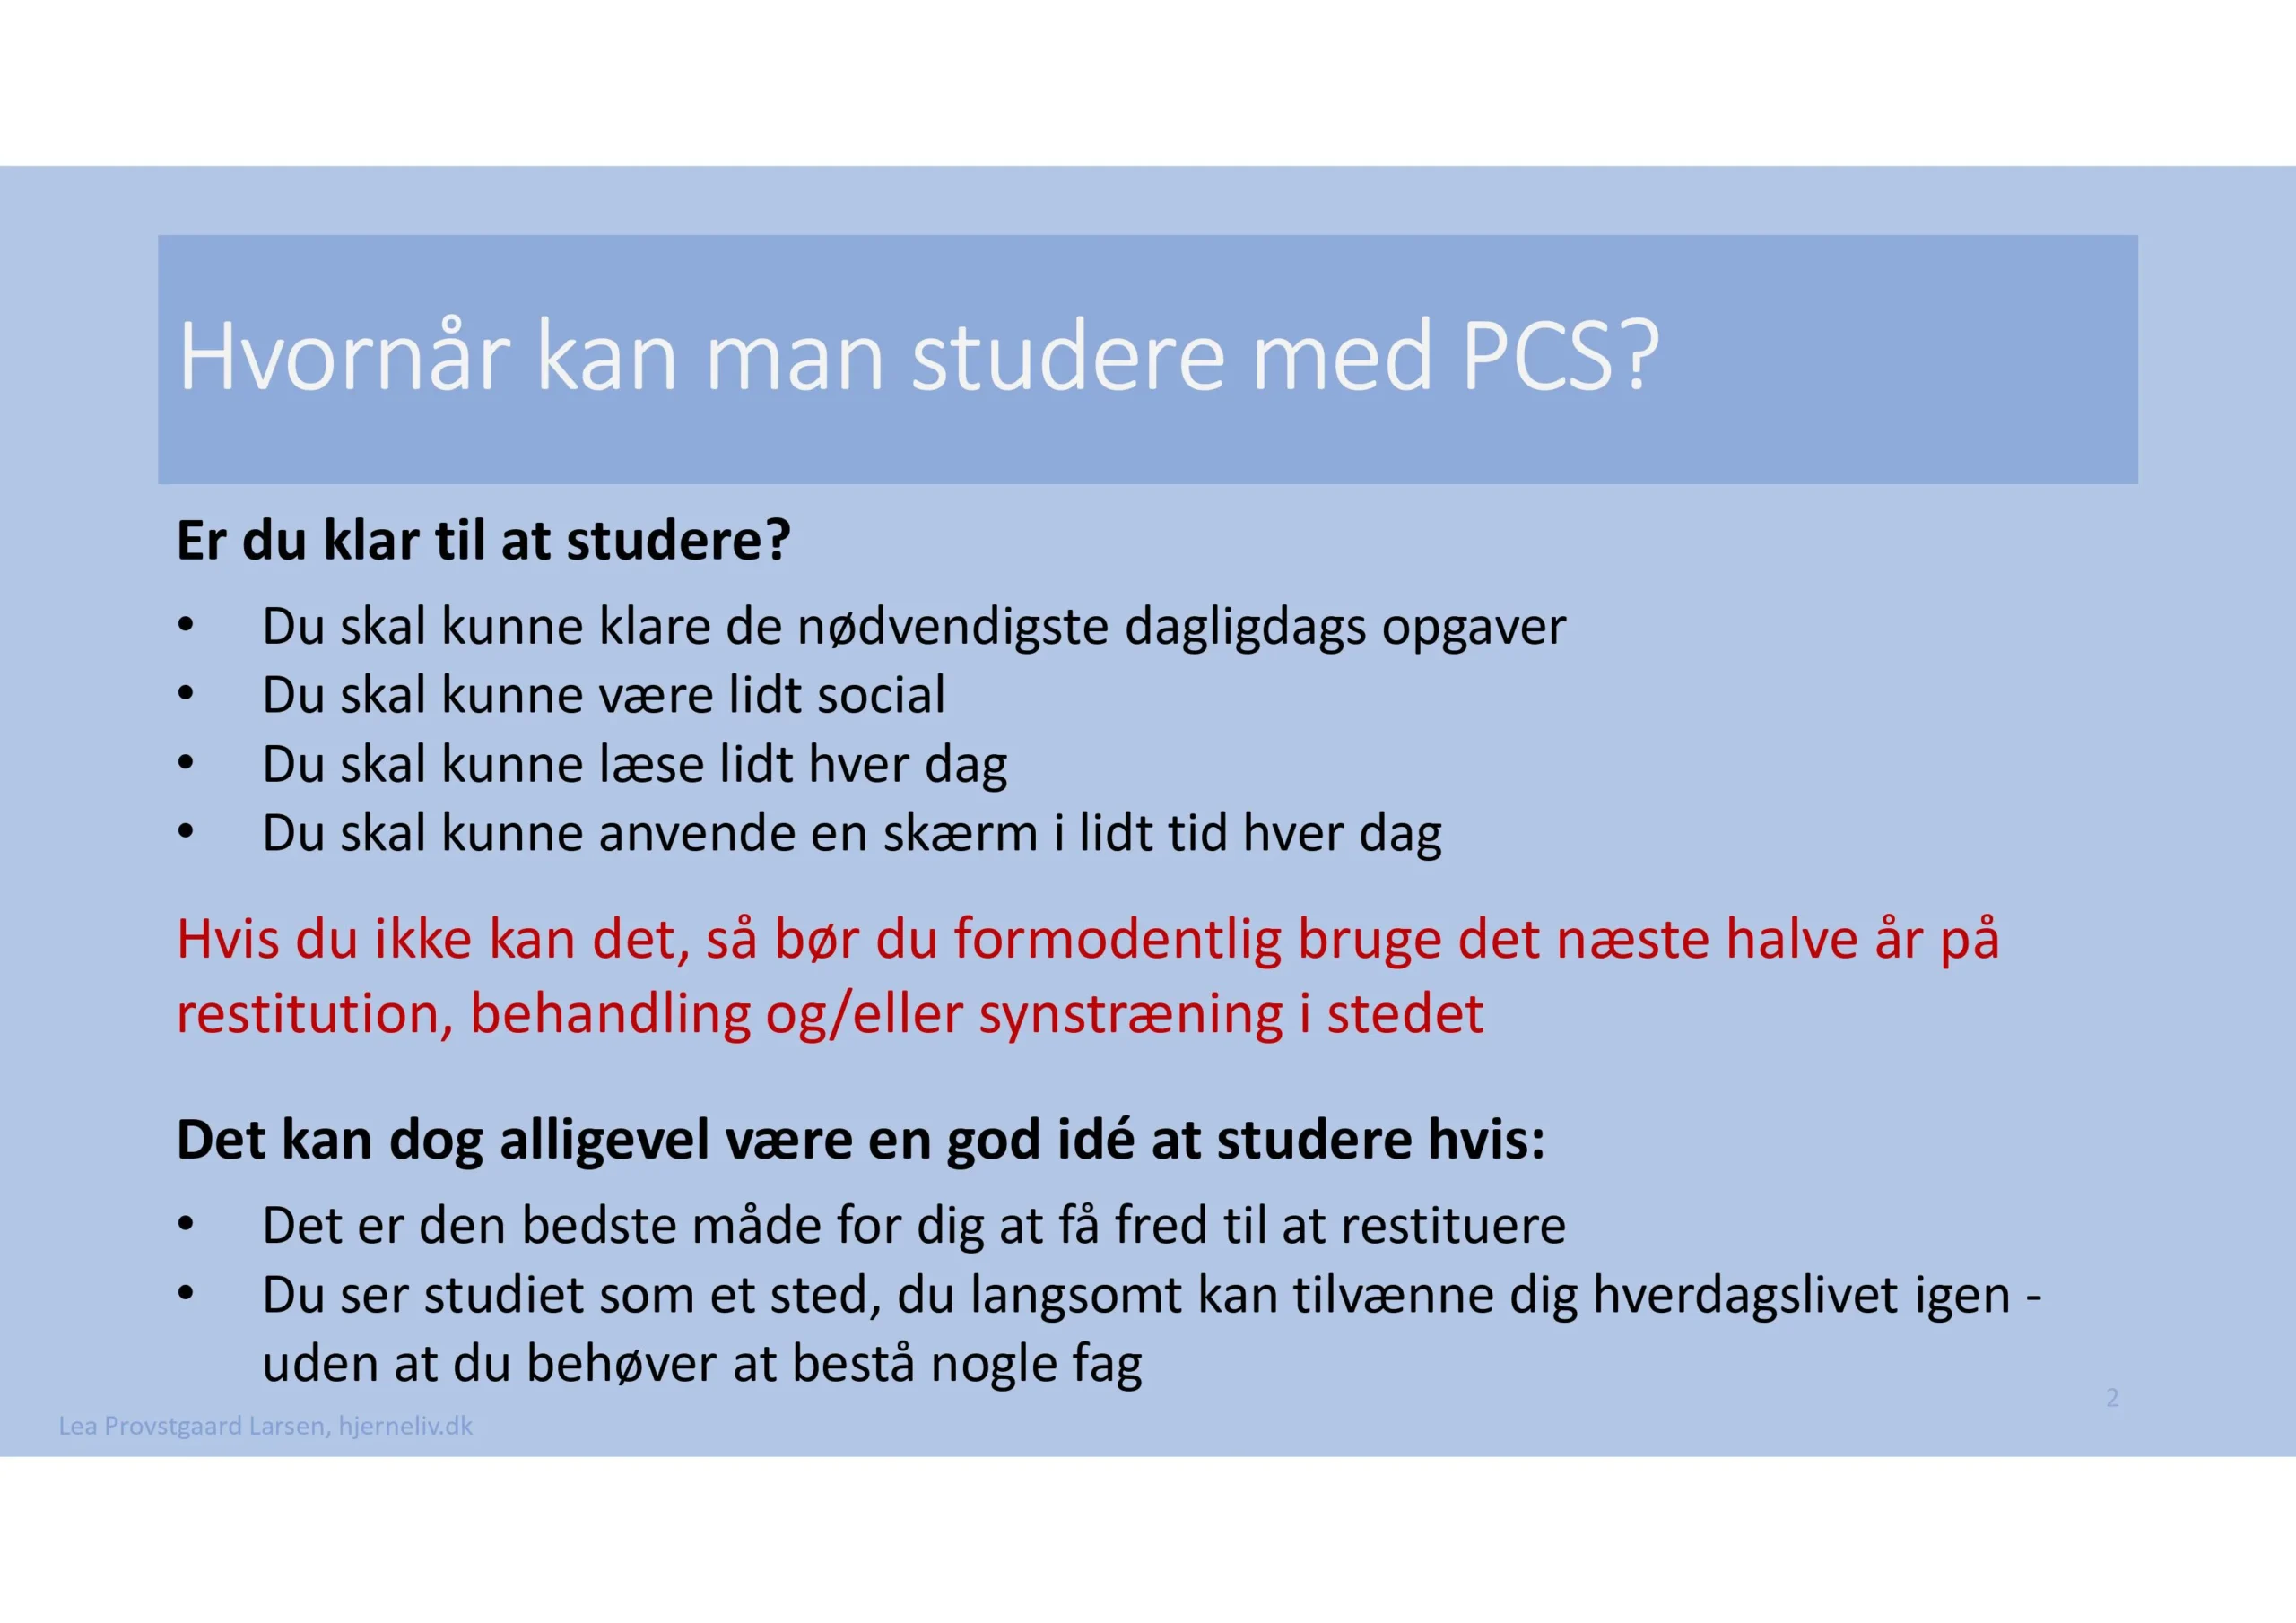 Hvornår kan man studere med PCS?